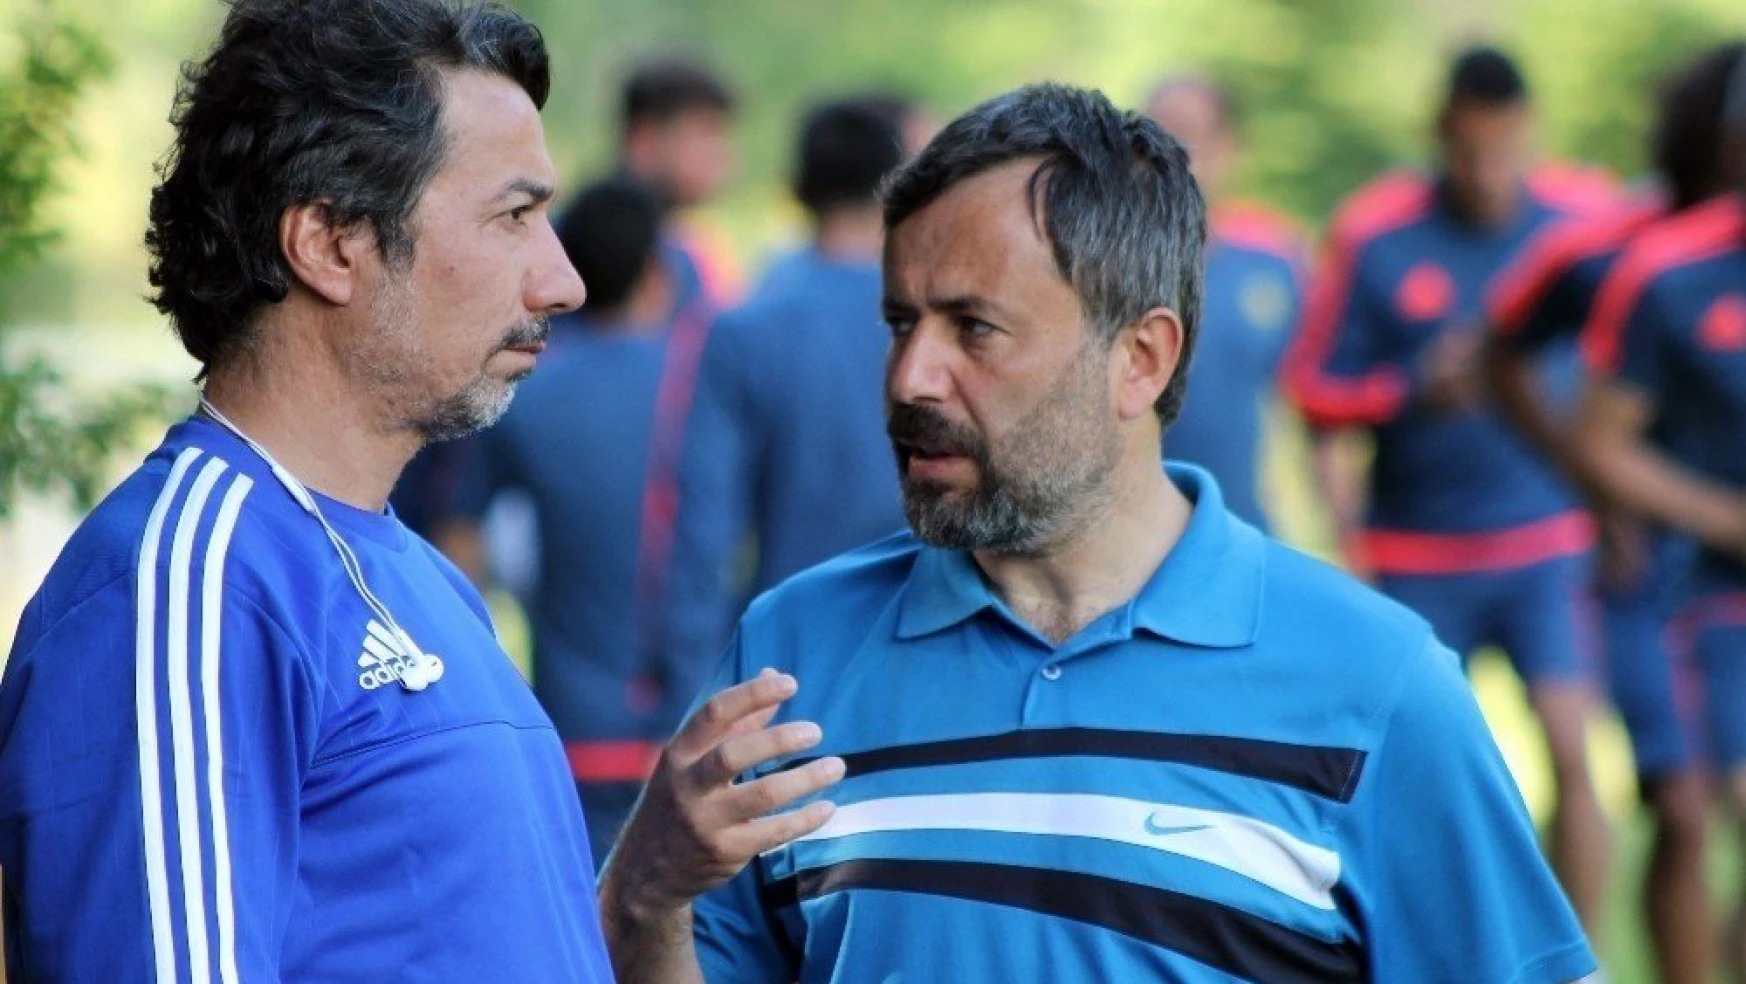 Yeni Malatyaspor'da Gevrek ile Ravcı transfer için bir araya gelecek
